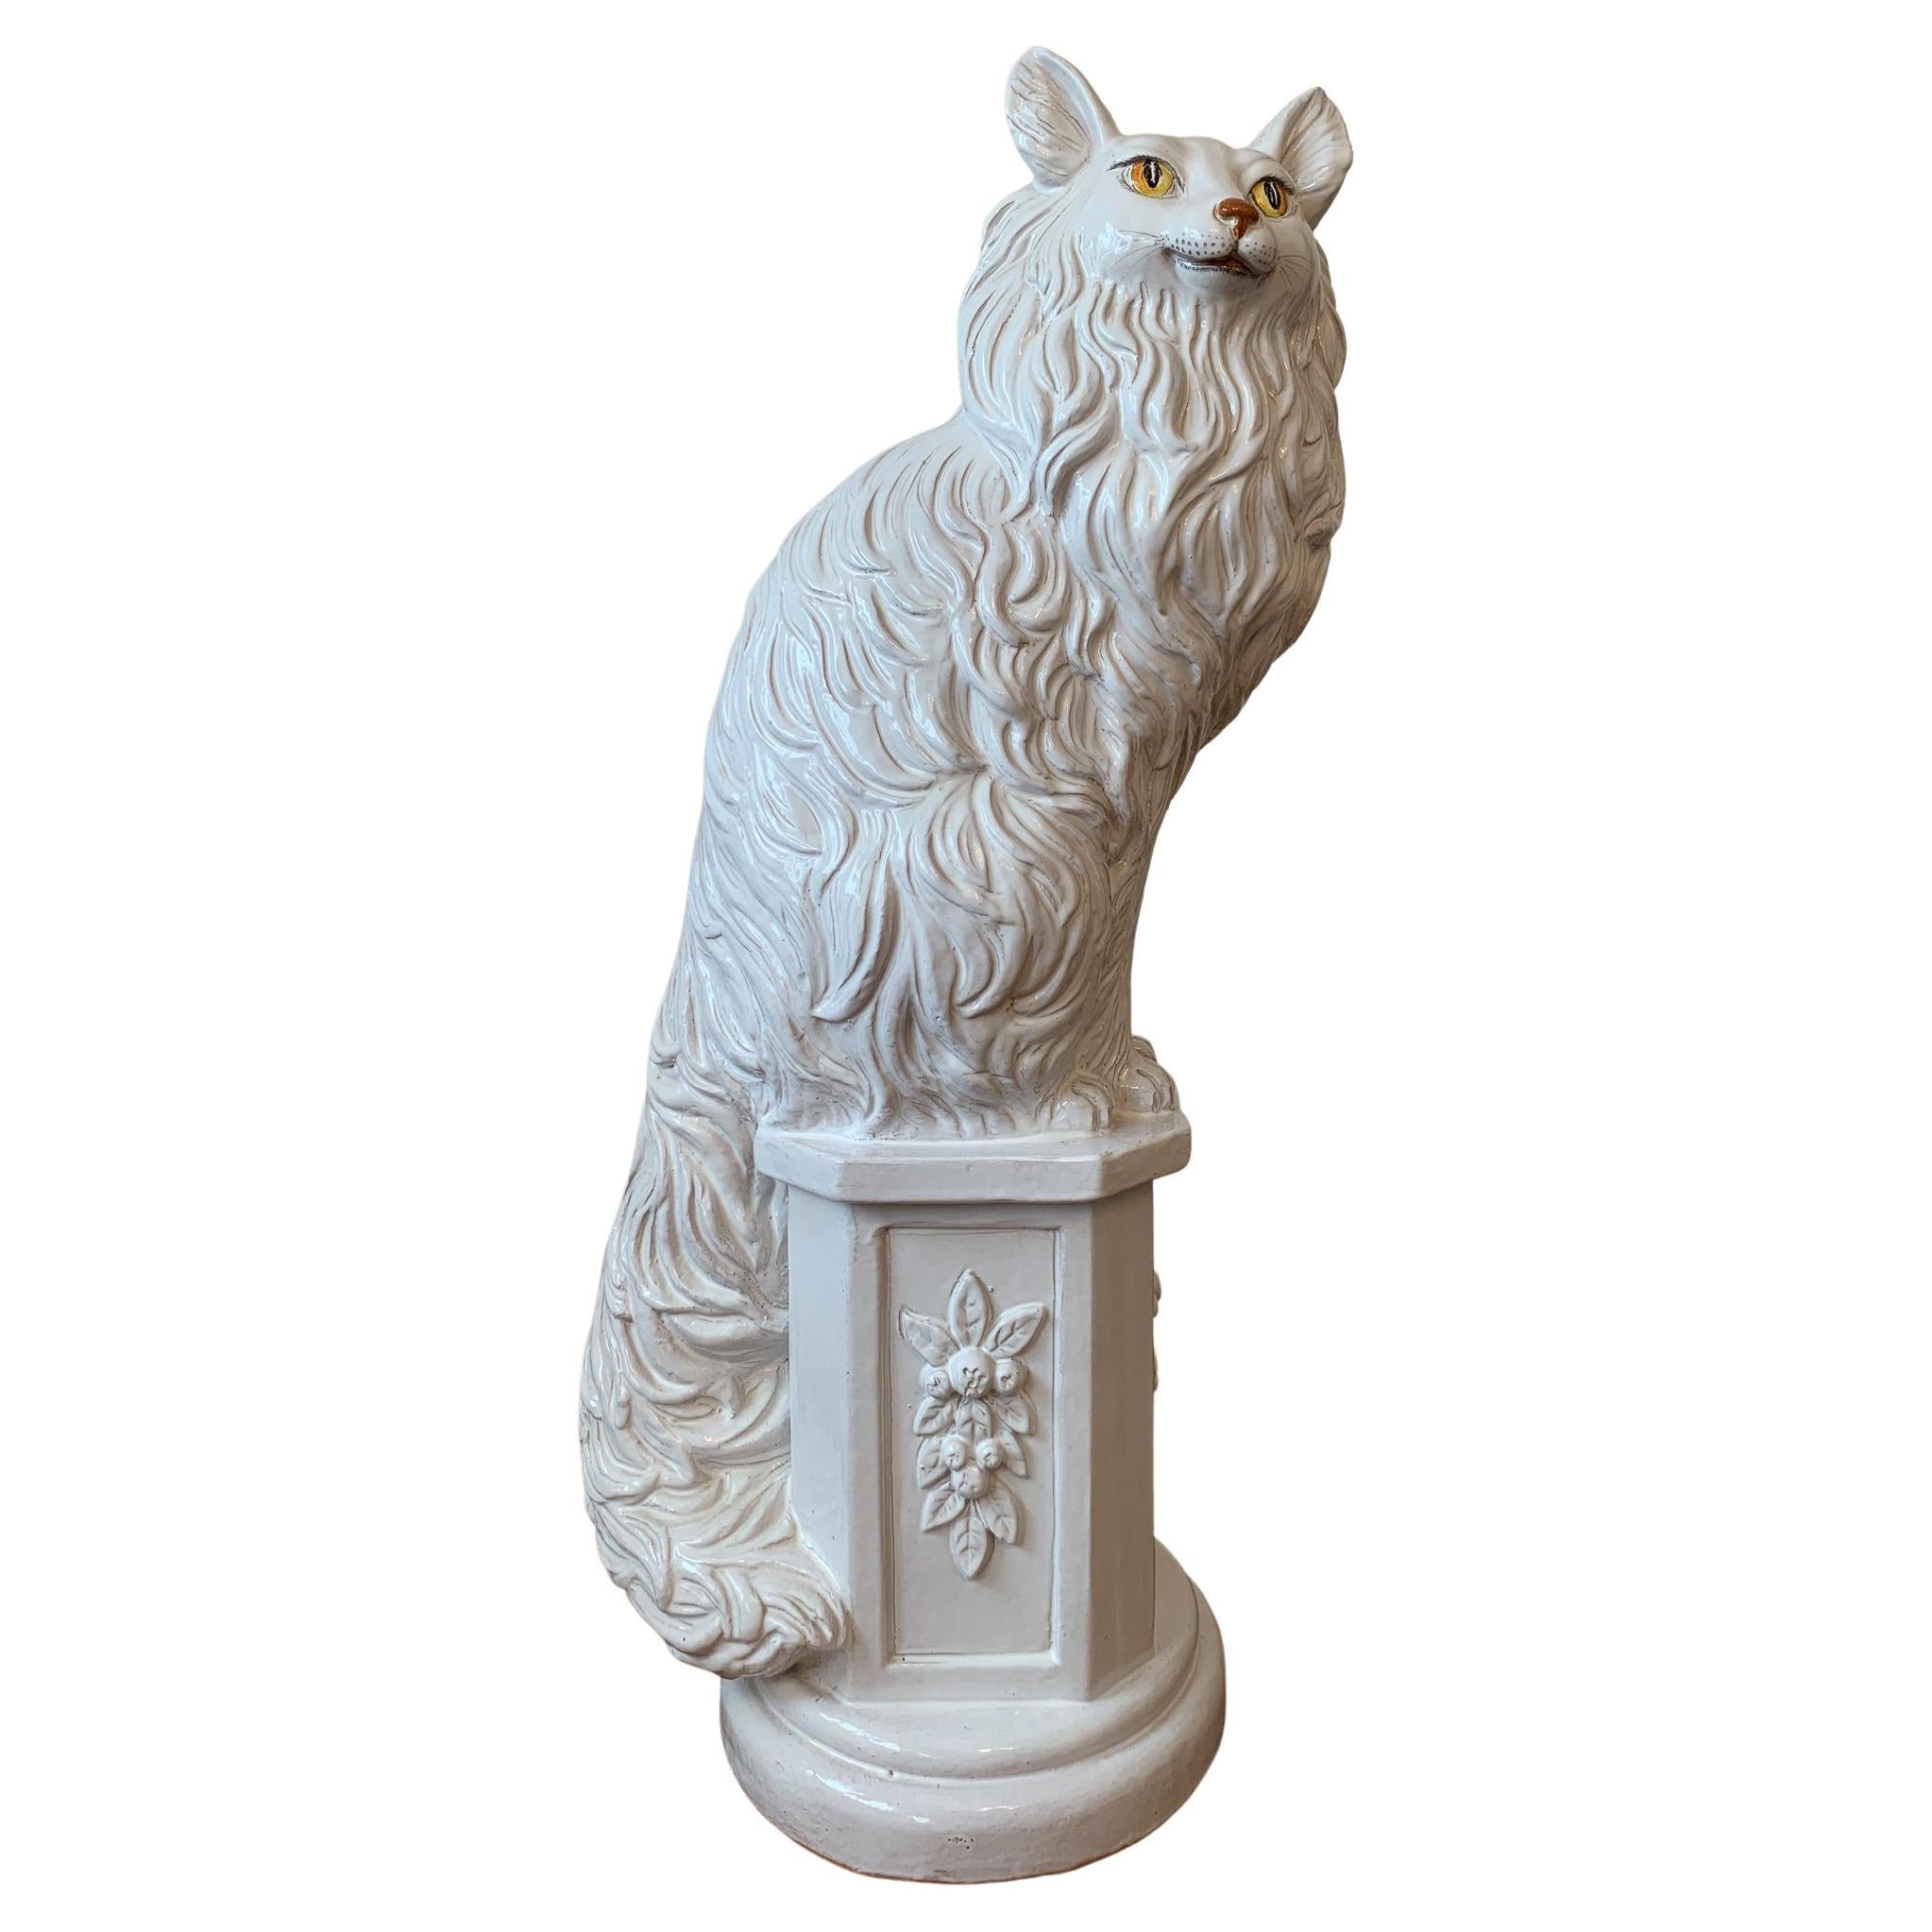 Grande sculpture en céramique émaillée blanche représentant un chat assis ou un renard, Italie, milieu des années 1960